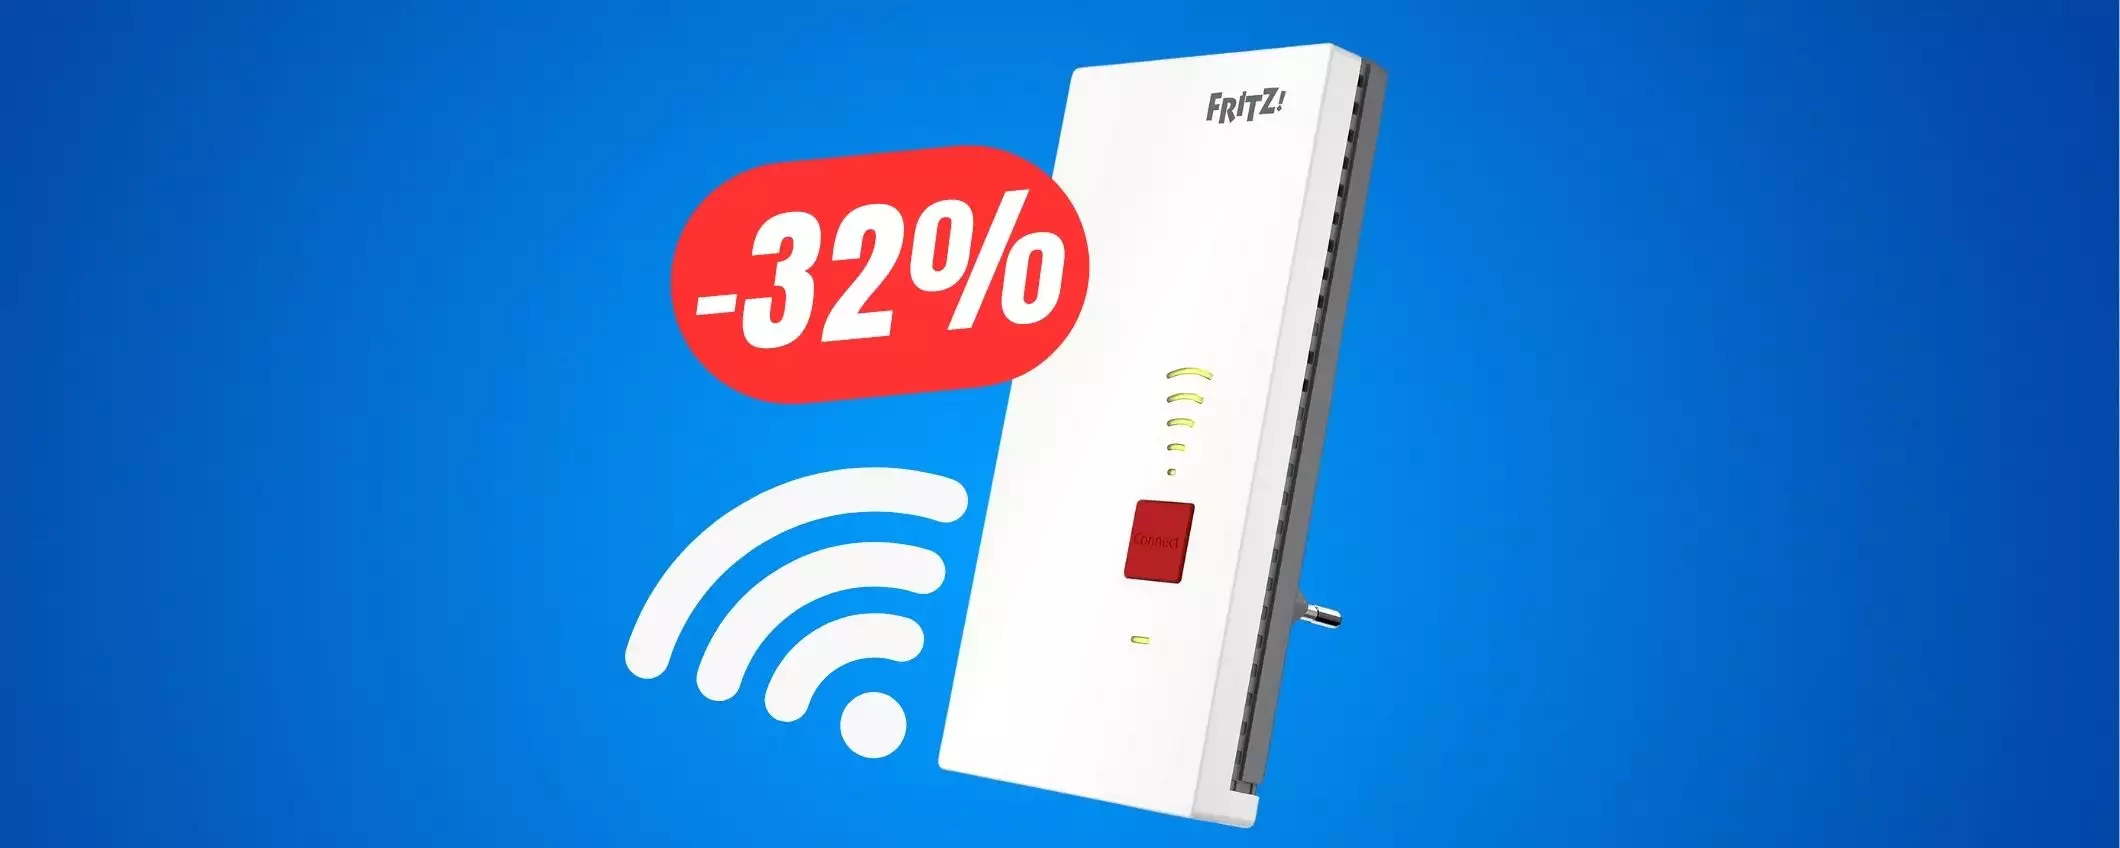 Con il RIPETITORE WiFi FRITZ! (-32%) non avrai più problemi di connessione!